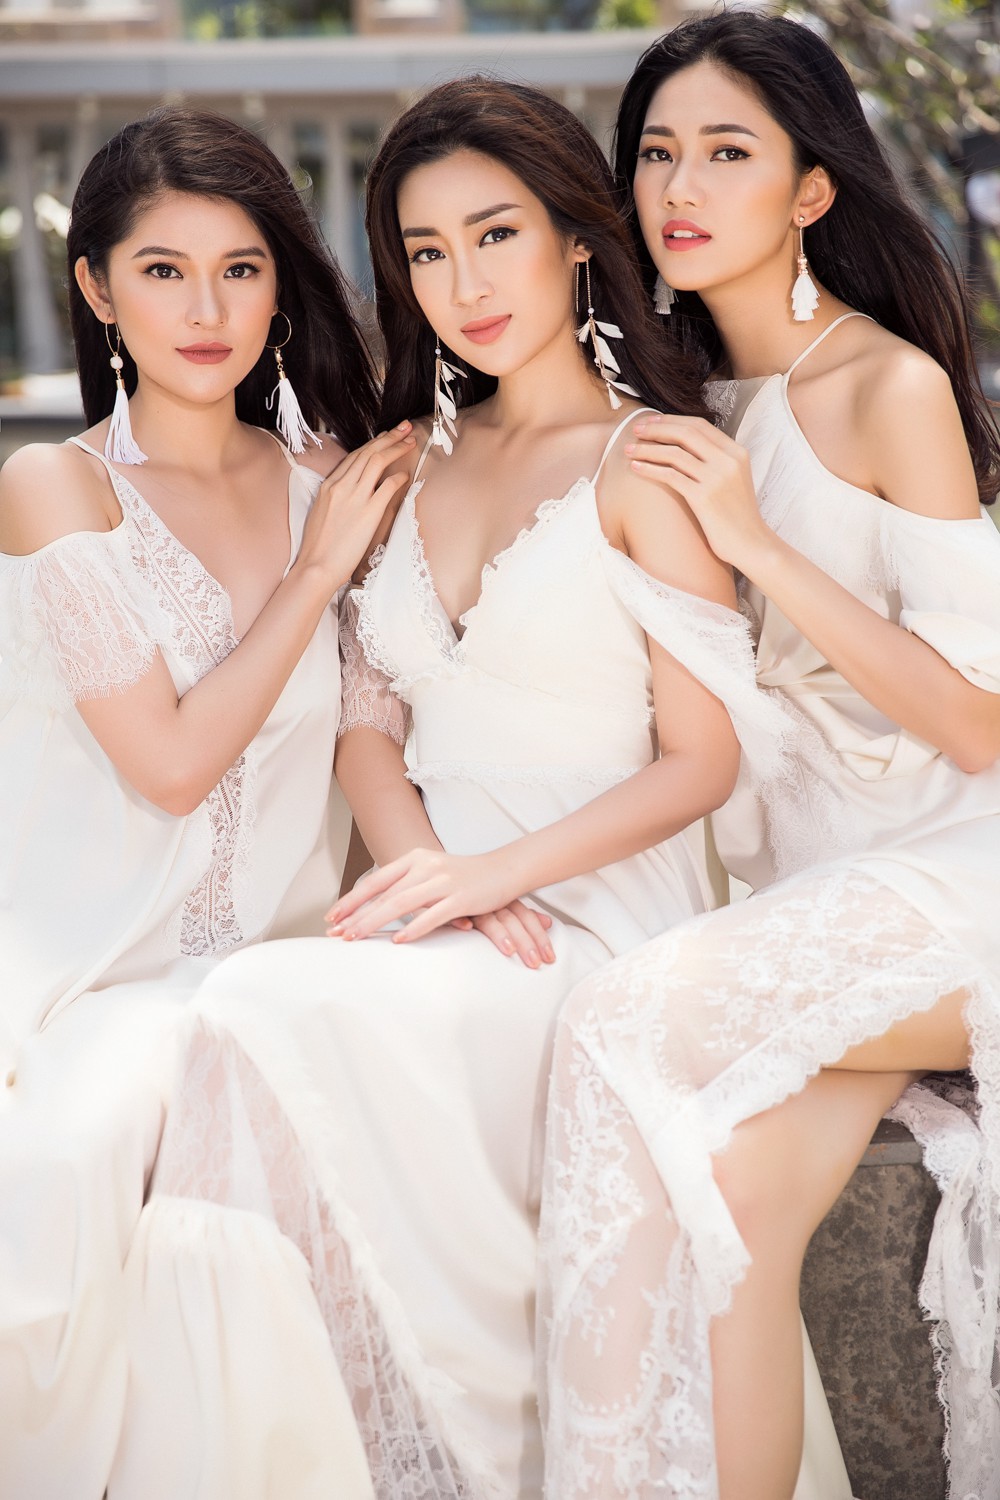 Ghen tỵ với bộ ảnh đẹp lung linh của Hội bạn thân Hoa hậu Mỹ Linh - Thùy Dung - Thanh Tú - Ảnh 1.